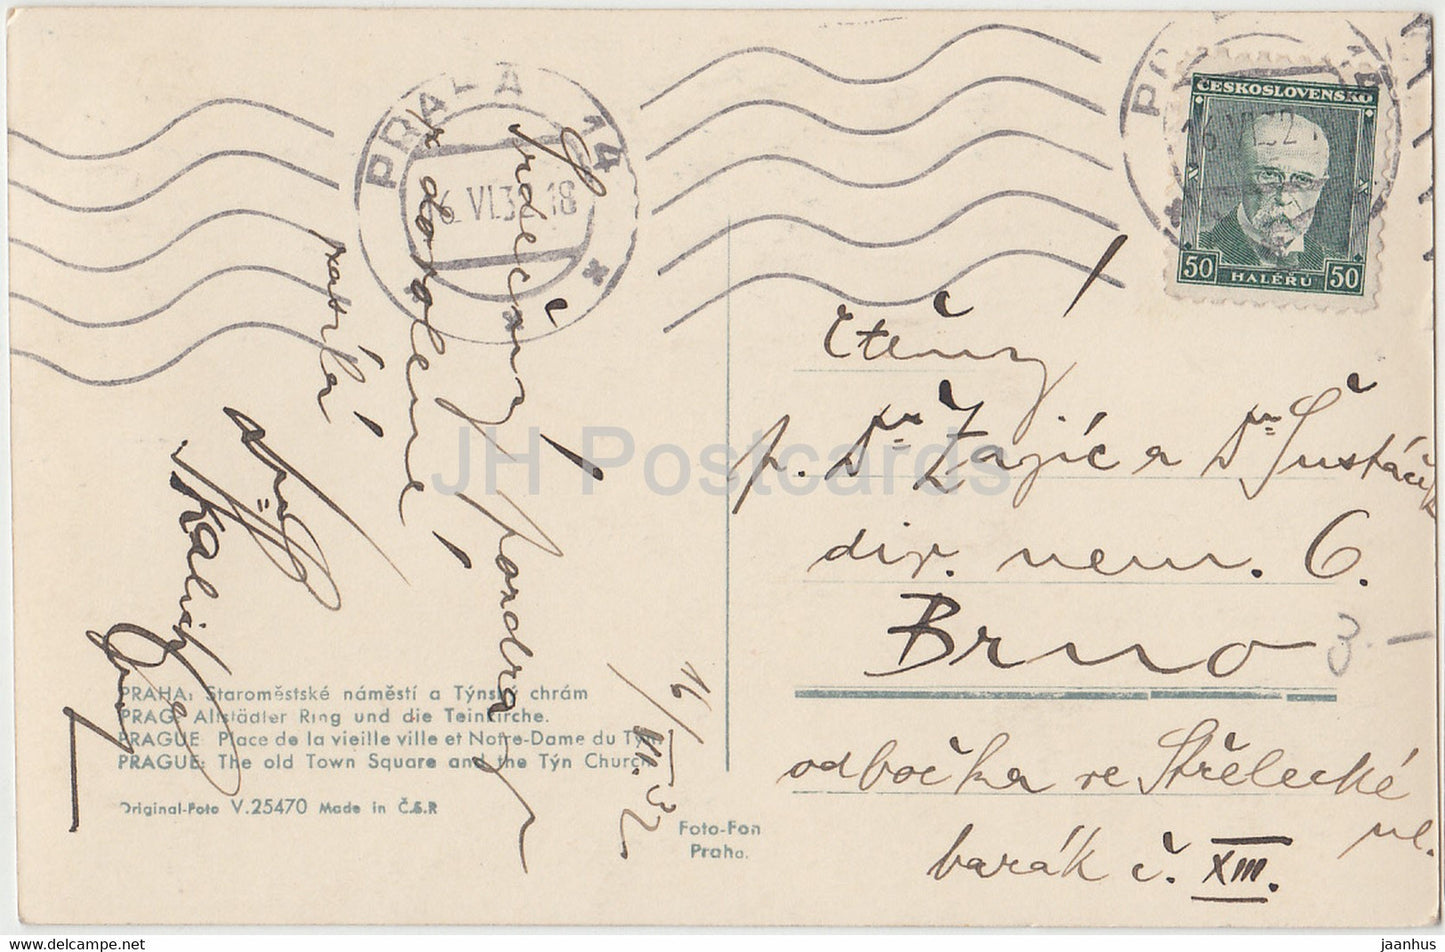 Praha - Prague - Staromestske namesti a Tynsky Chram - carte postale ancienne - 1932 - Tchécoslovaquie - République tchèque - utilisé